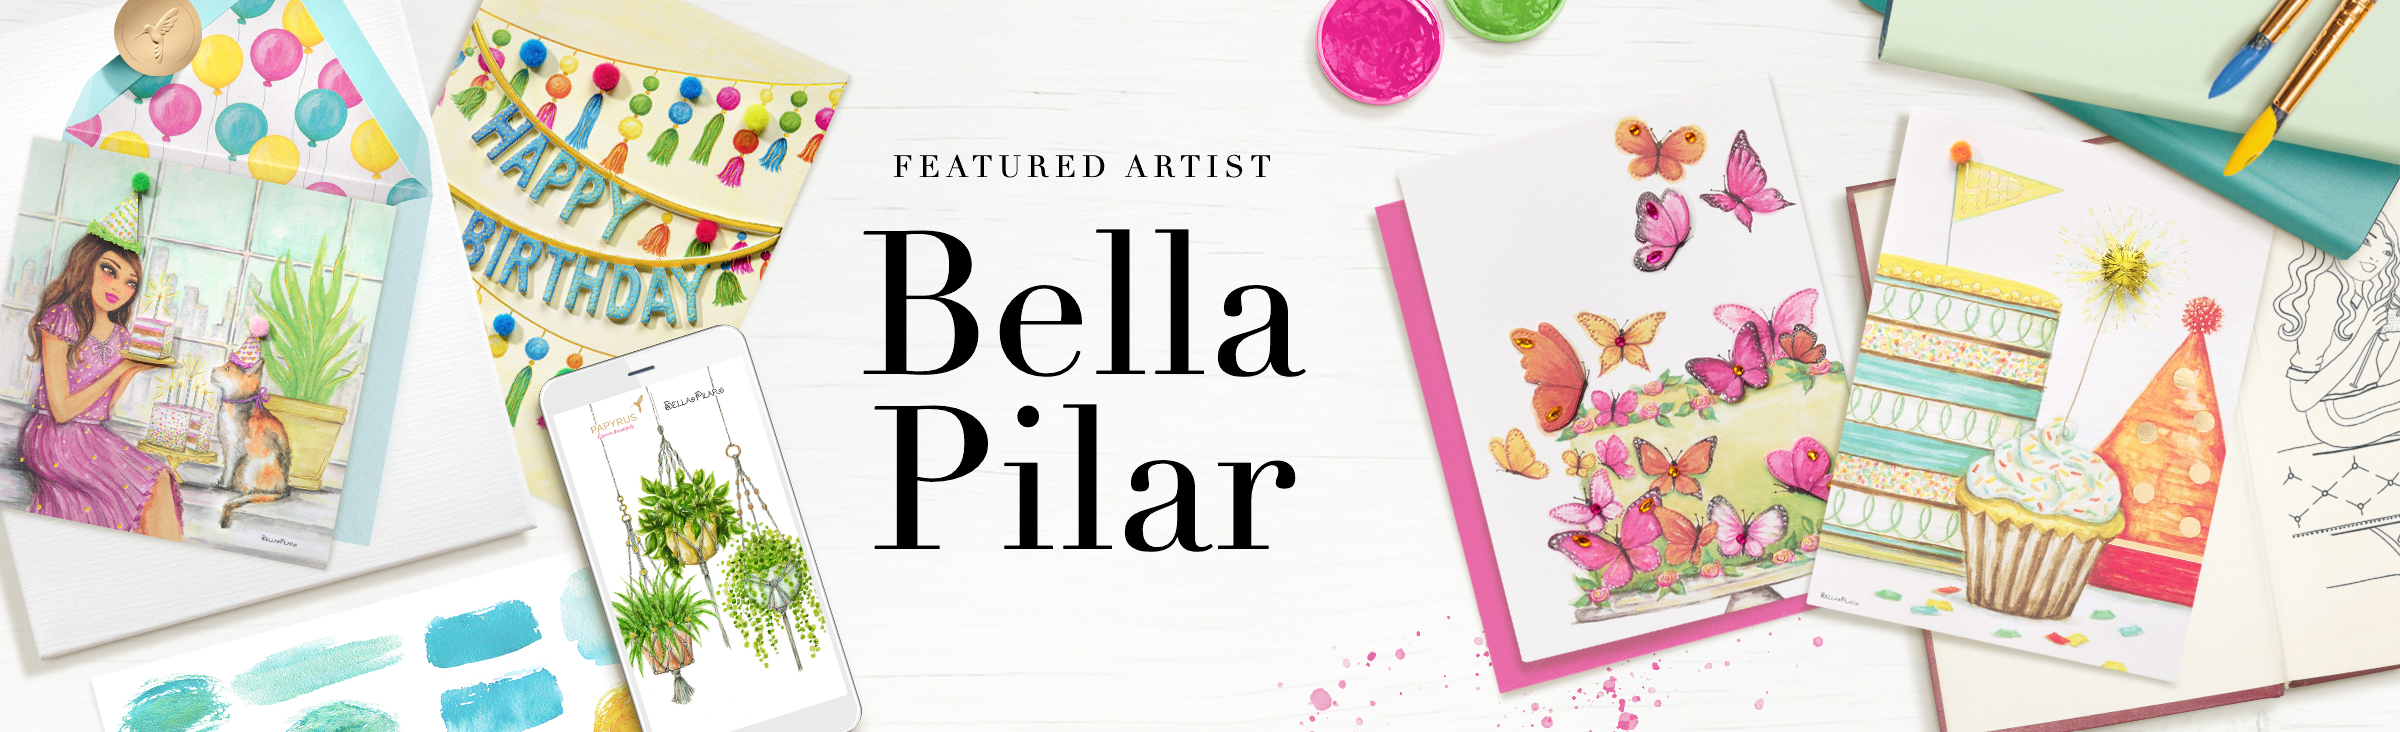 Featured Artist Bella Pilar